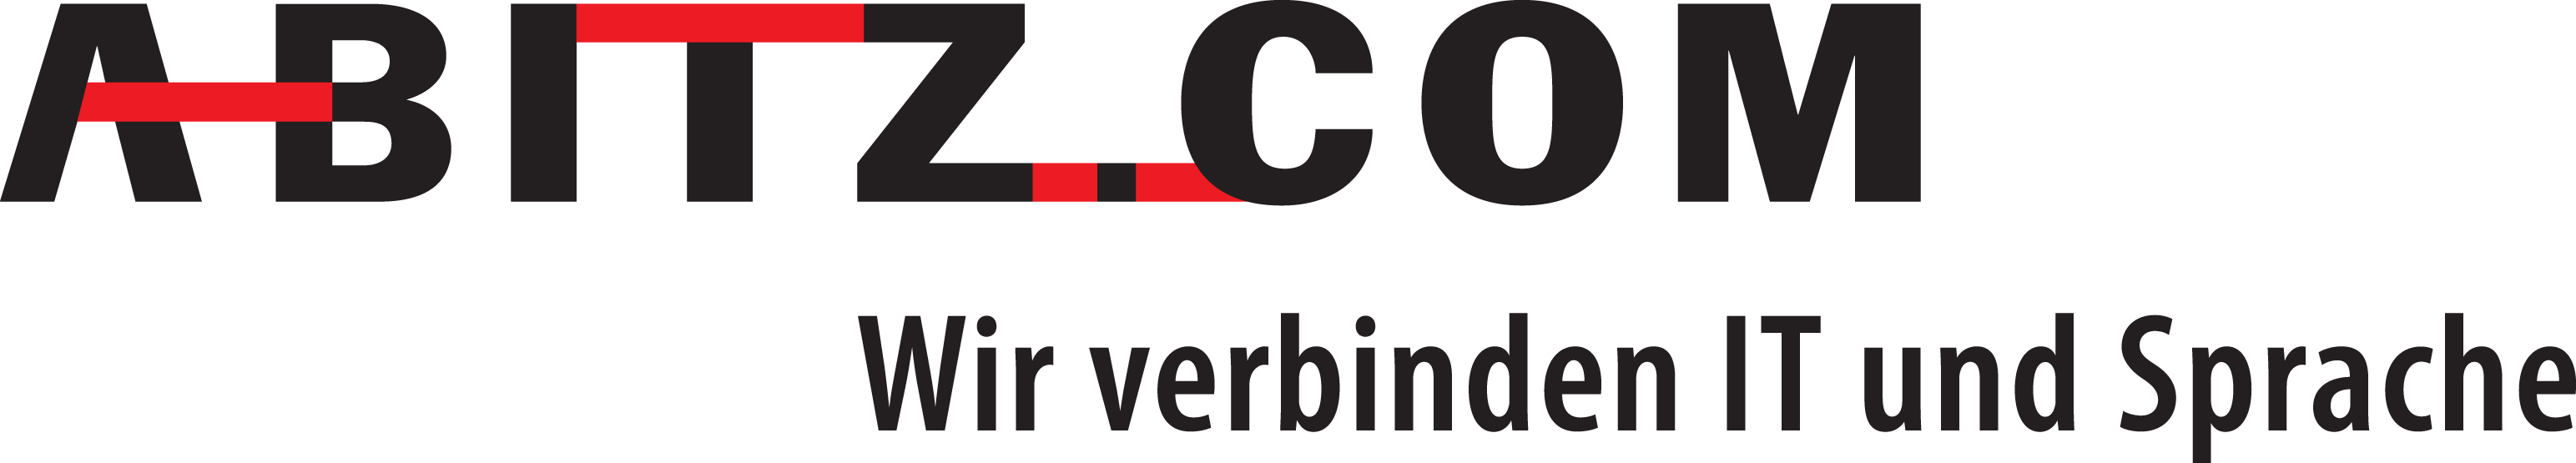 Logo mit Claim: Wir verbinden IT und Sprache